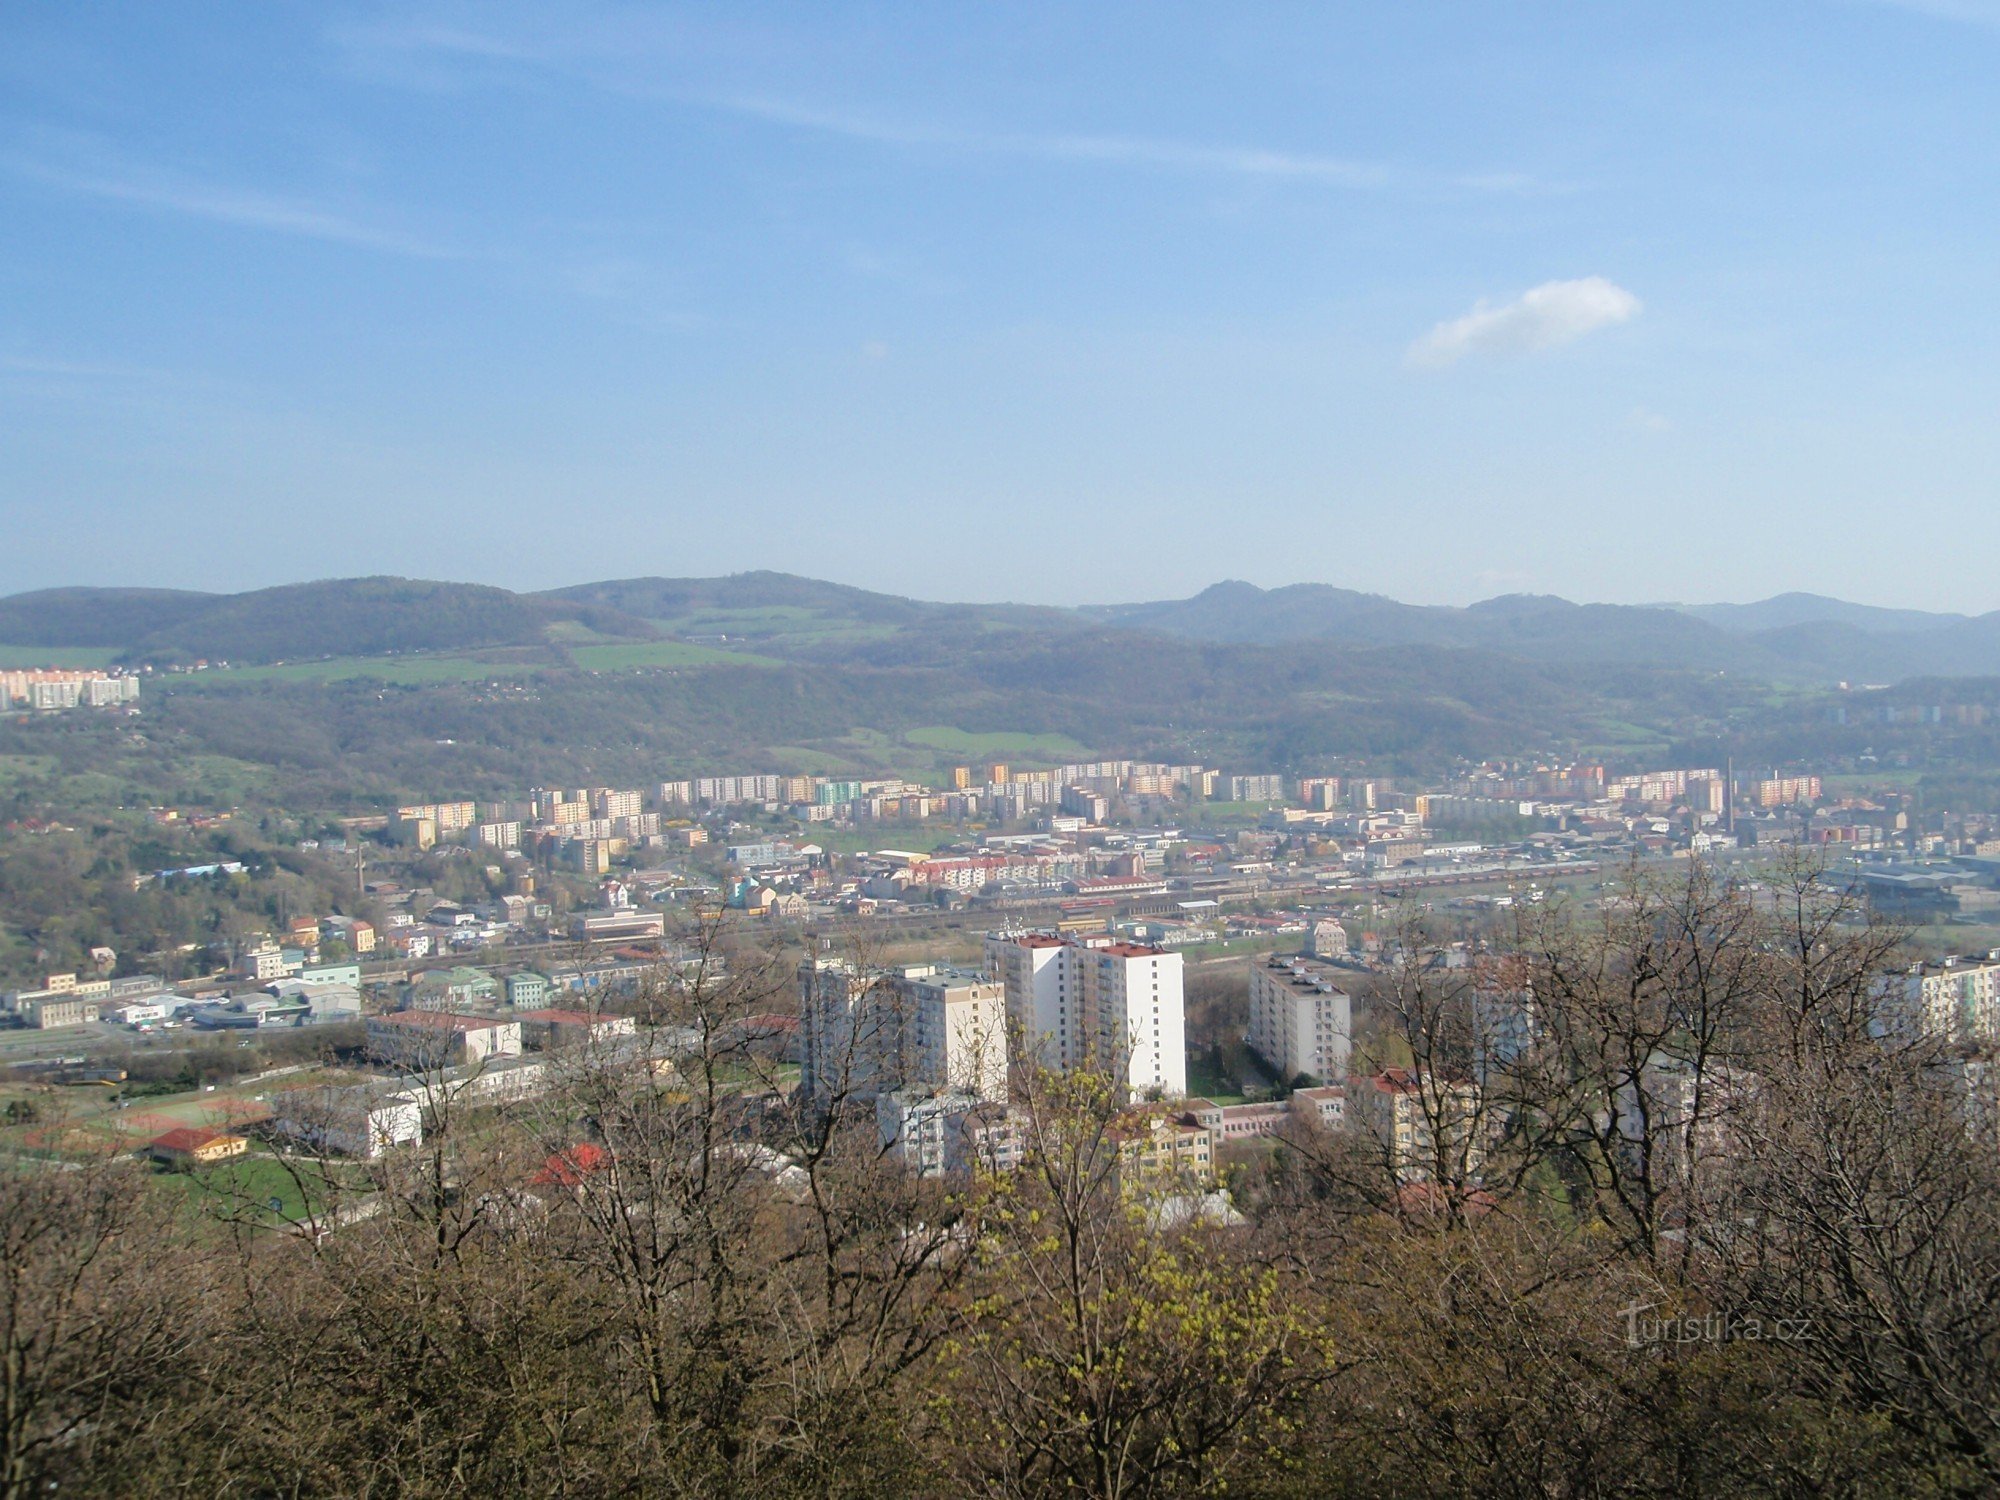 Quang cảnh từ góc nhìn của Ústí